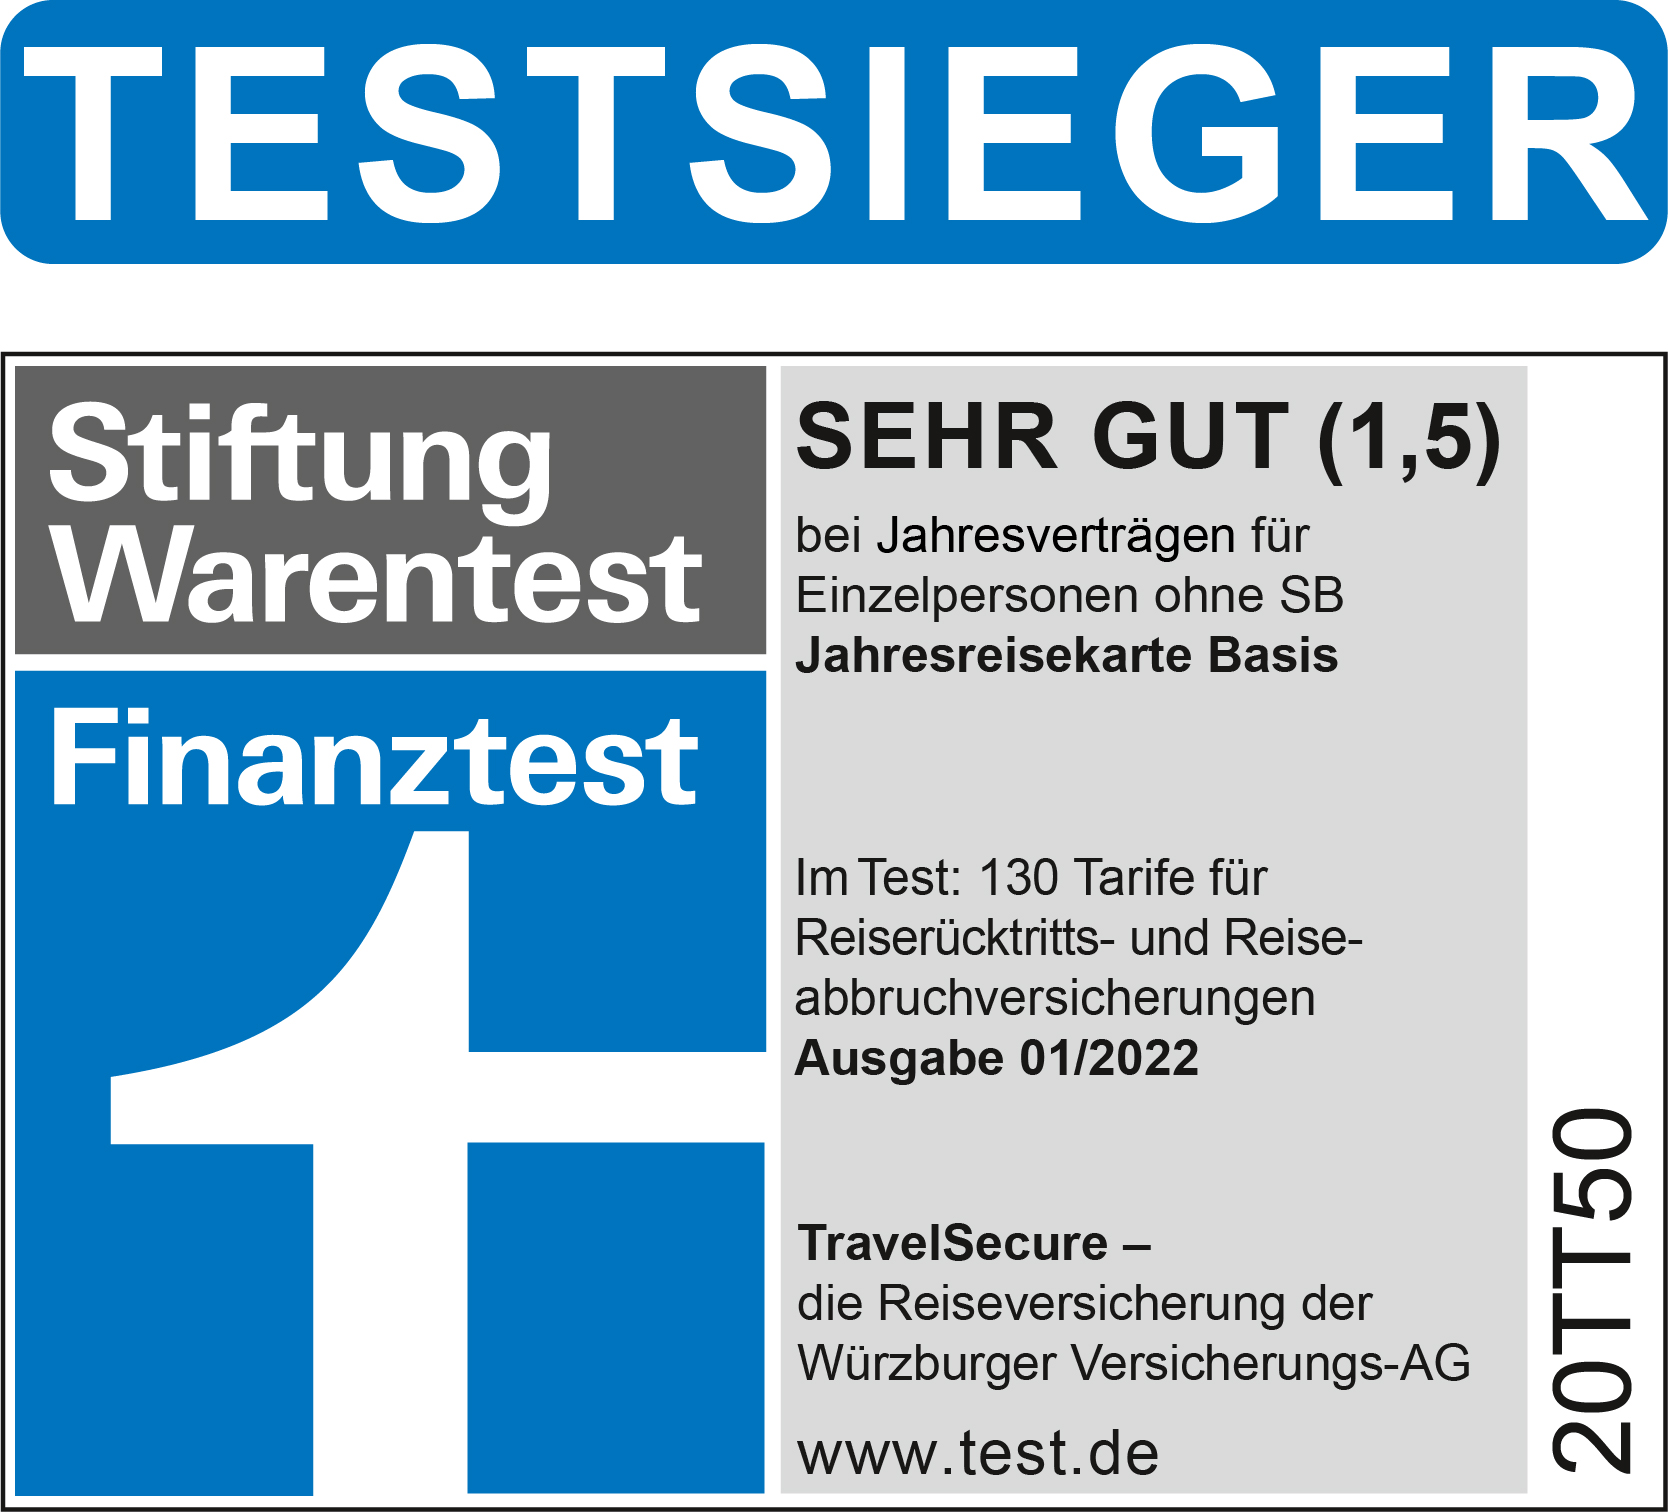  Testsieger Auslandskrankenversicherung 01/2022 Würzburger